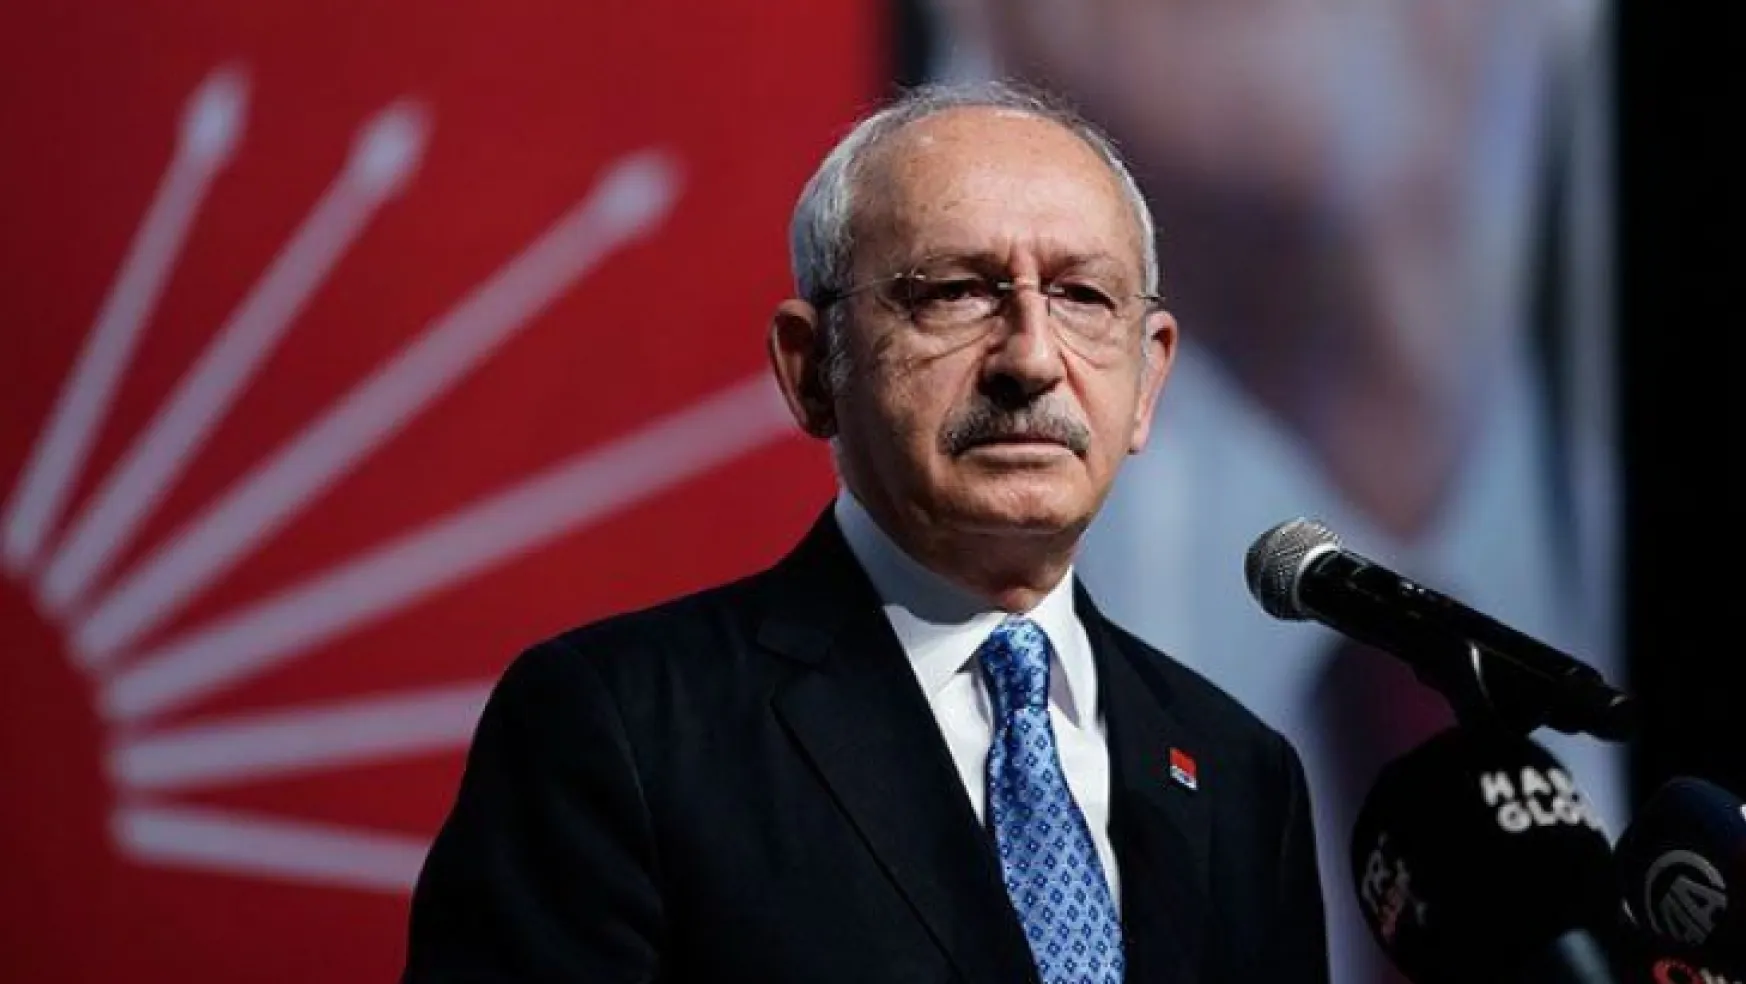 Doğru Parti Kılıçdaroğlu'nu destekleyecek